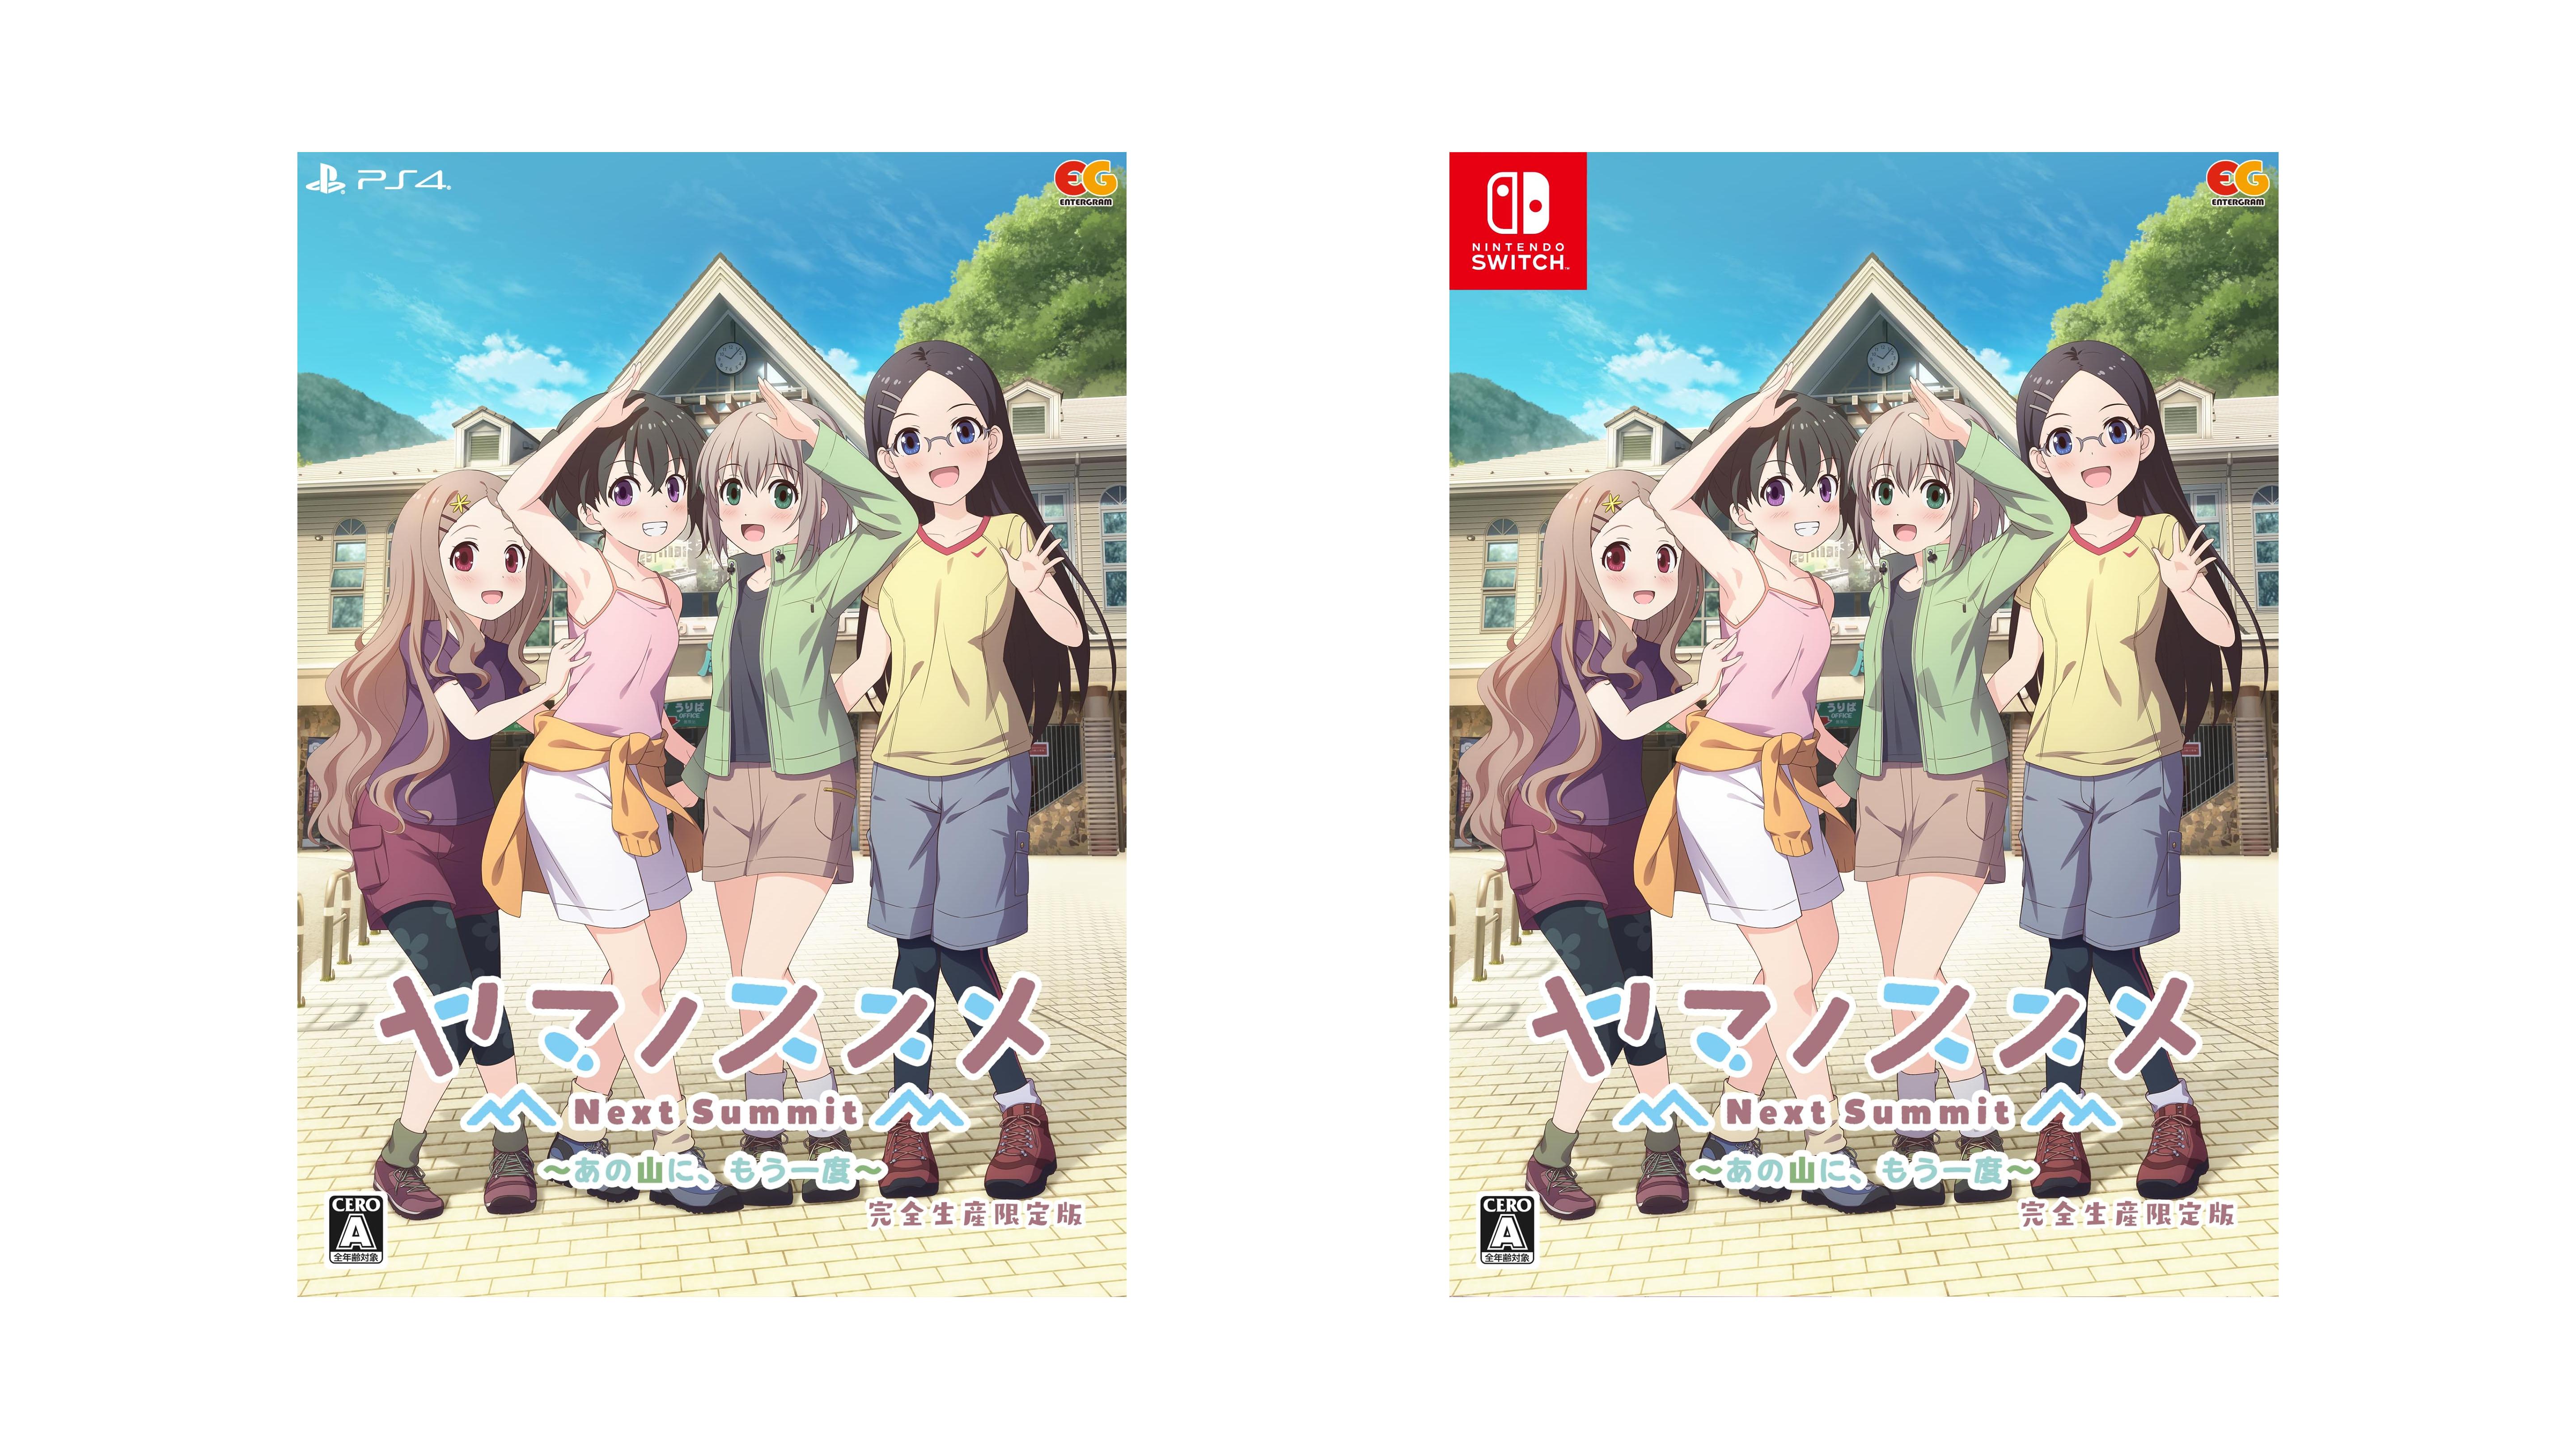 YESASIA: Yama no Susume Next Summit: Ano Yamani Mouichido (Japan Version) -  - PlayStation 4 (PS4) Games - Free Shipping